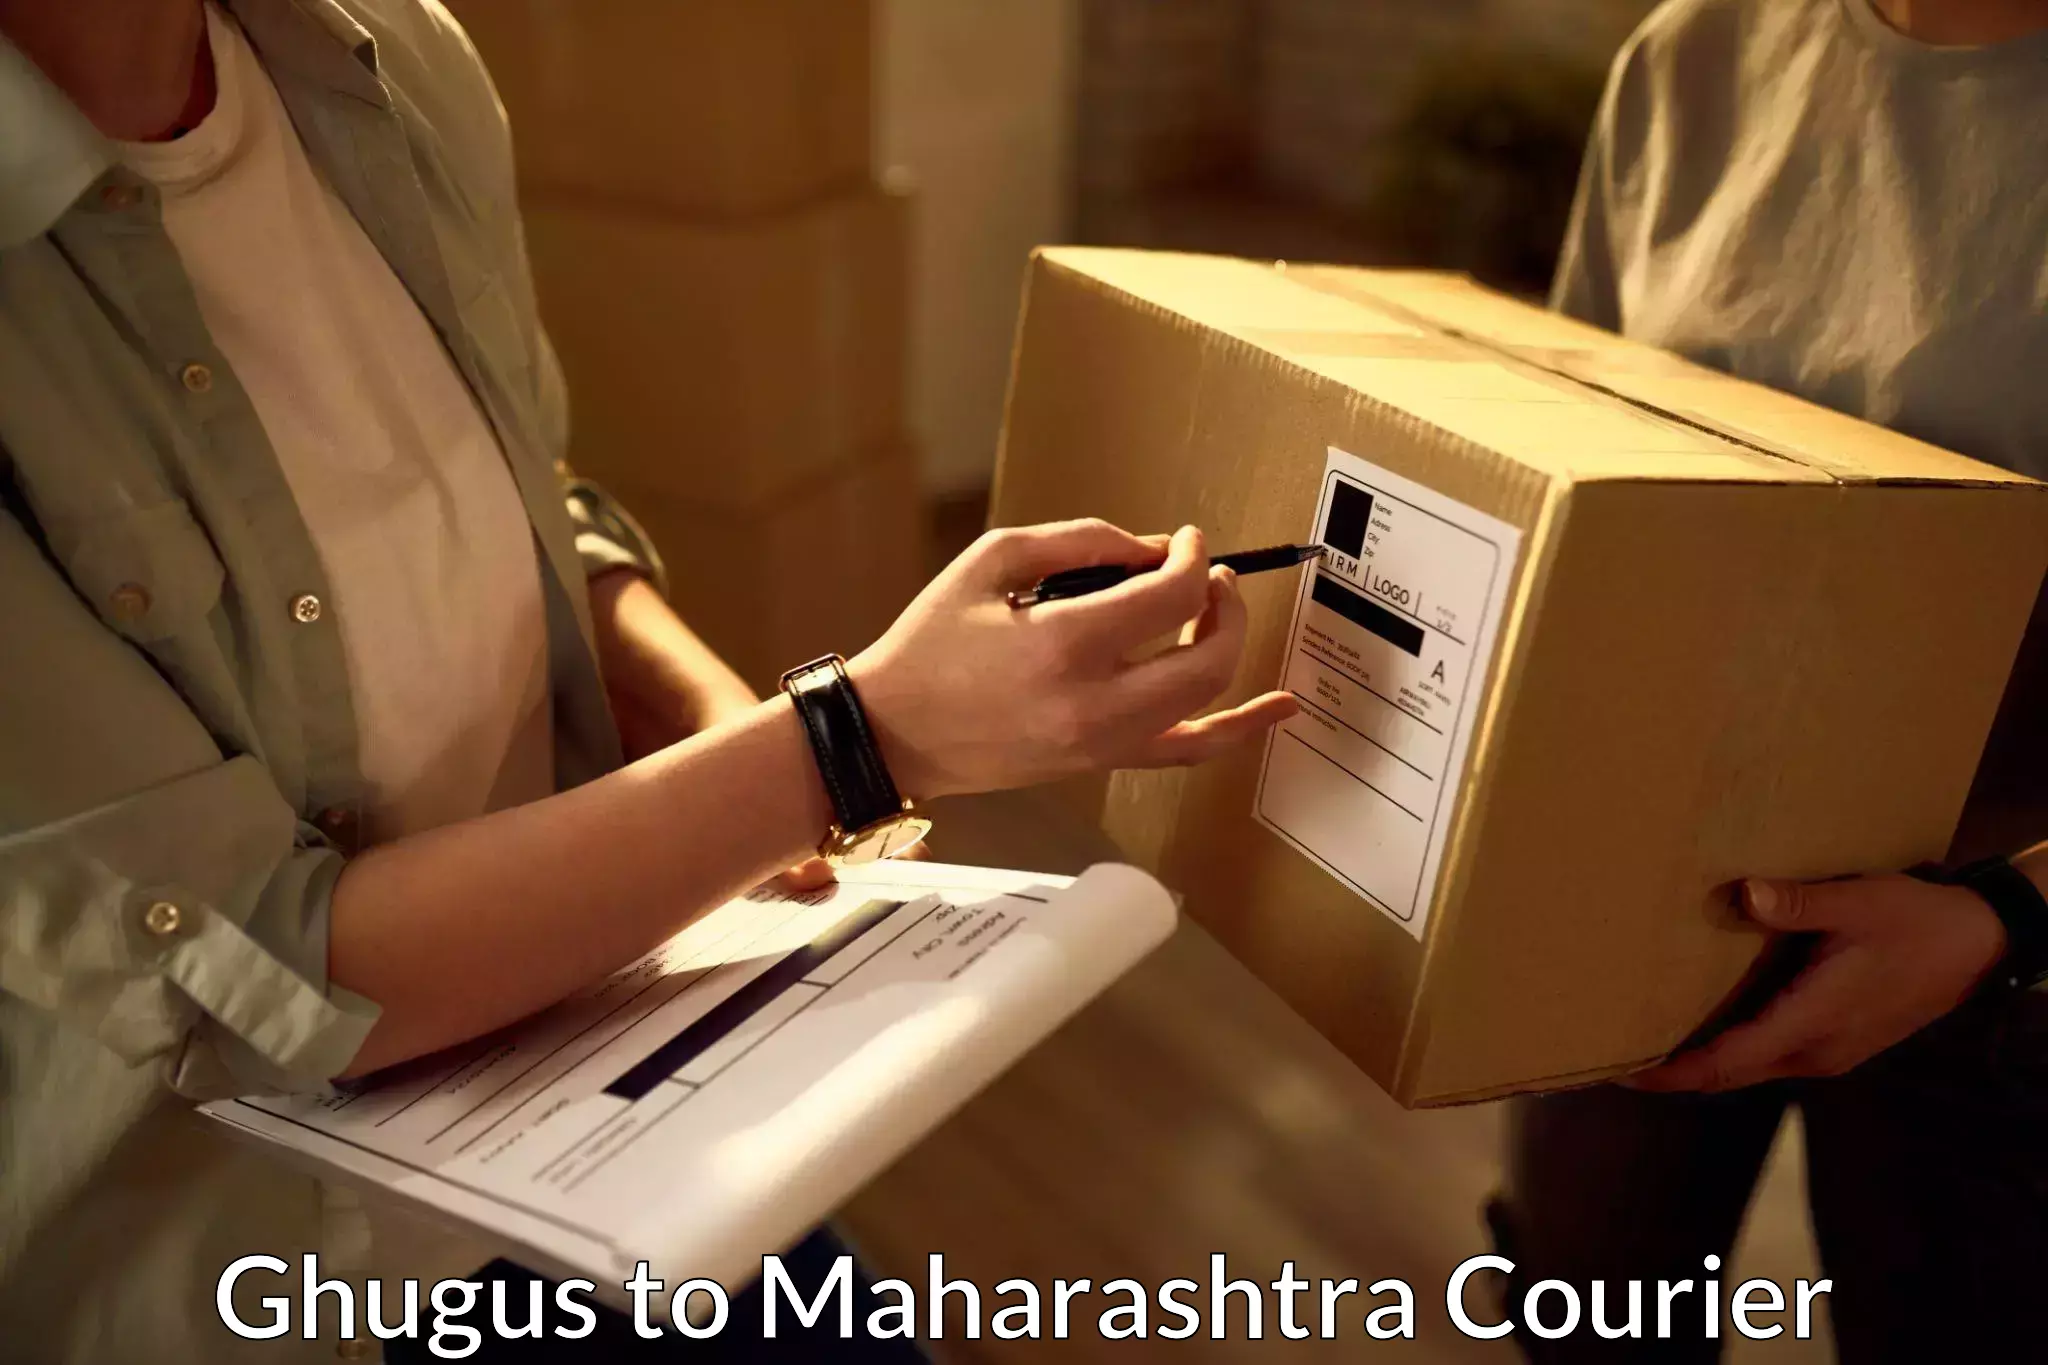 Shipping and handling Ghugus to Maharashtra